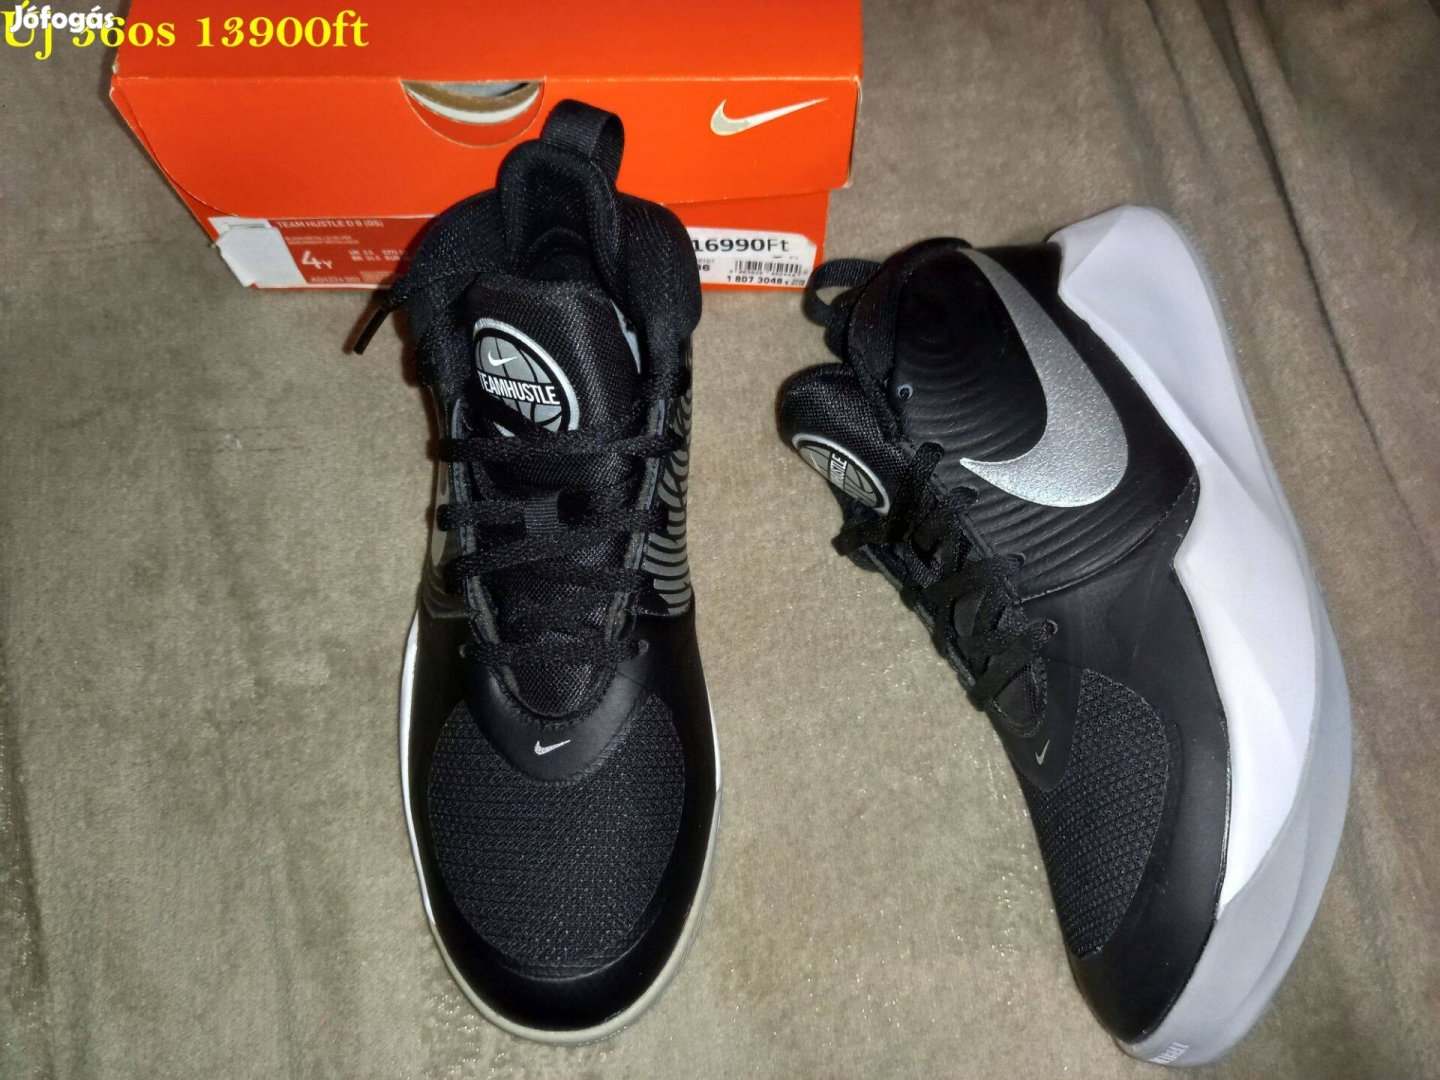 Új 36-os Nike fekete magasszárú cipő, sportcipő 13900ft